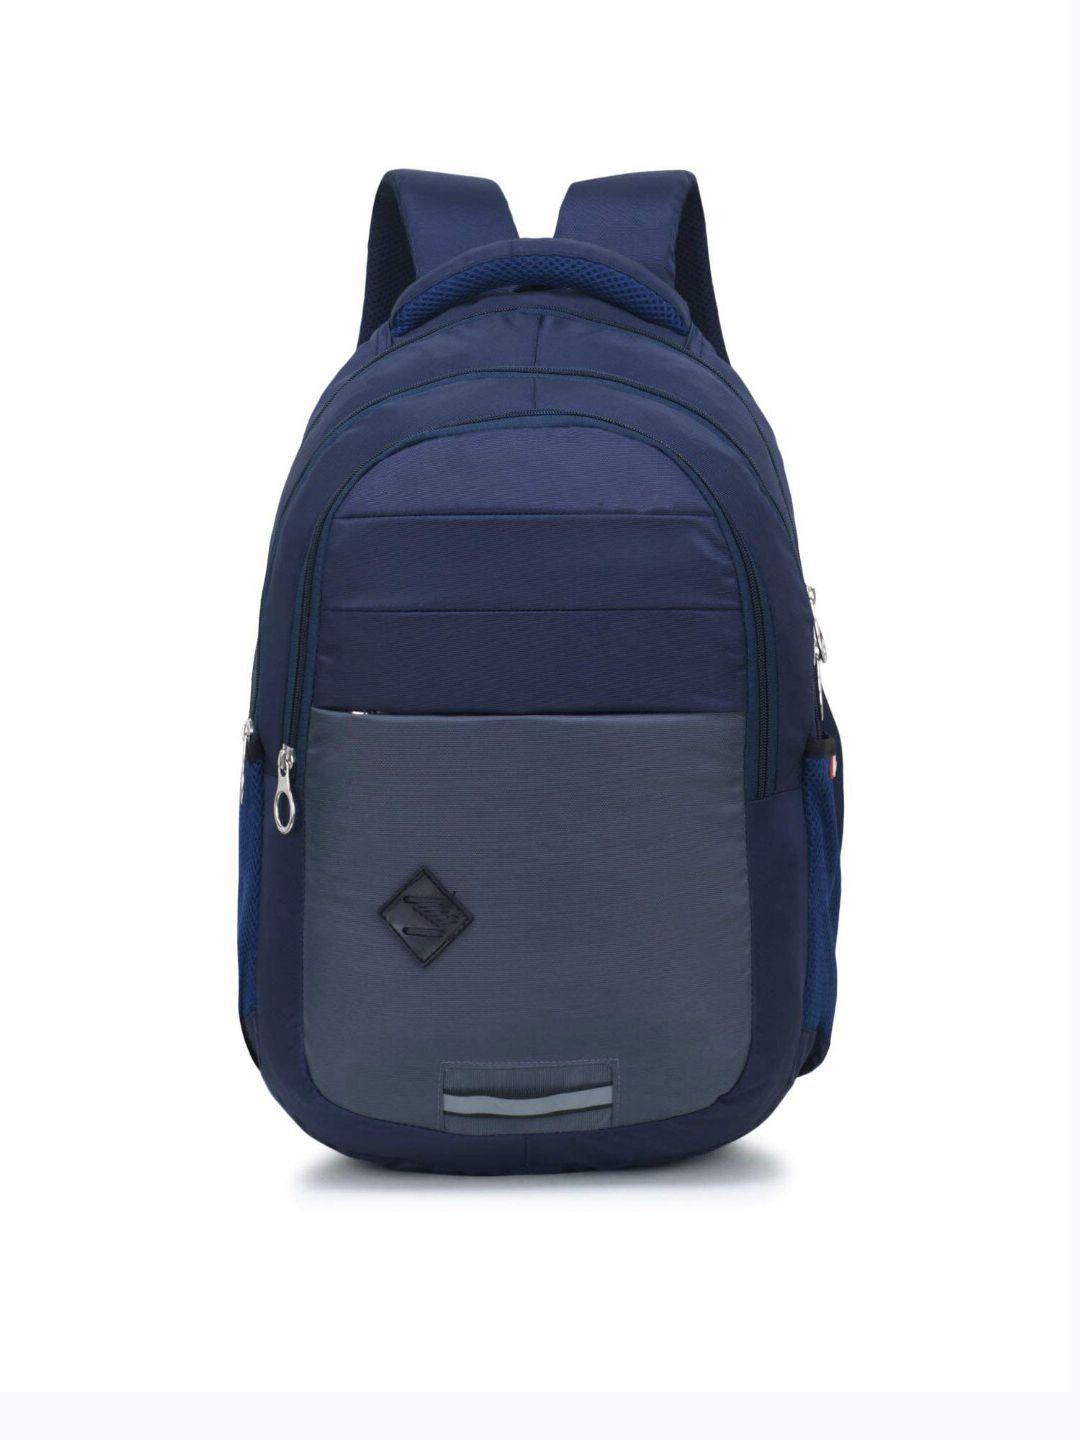 lookmuster unisex blue & grey waterproof laptop backpack